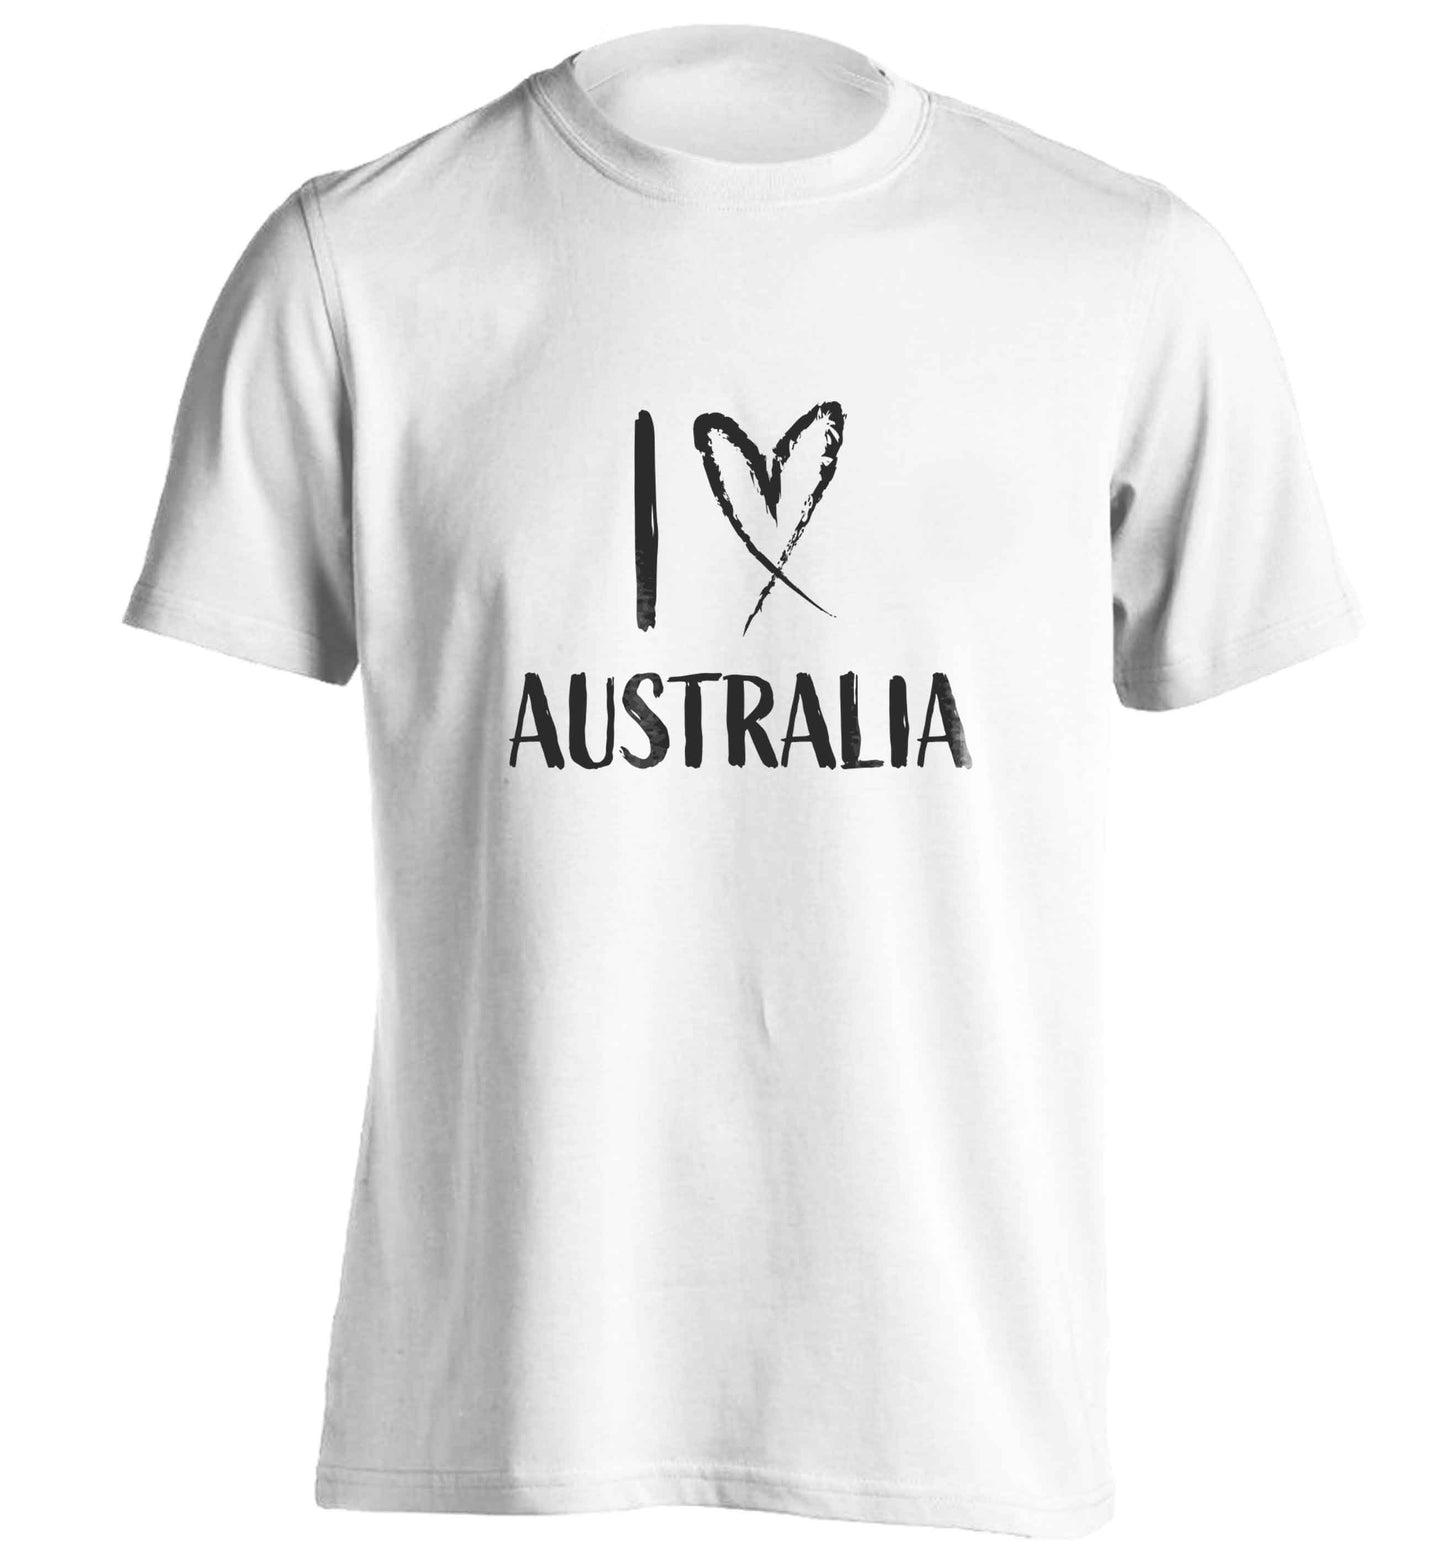 I Love Australia adults unisex white Tshirt 2XL